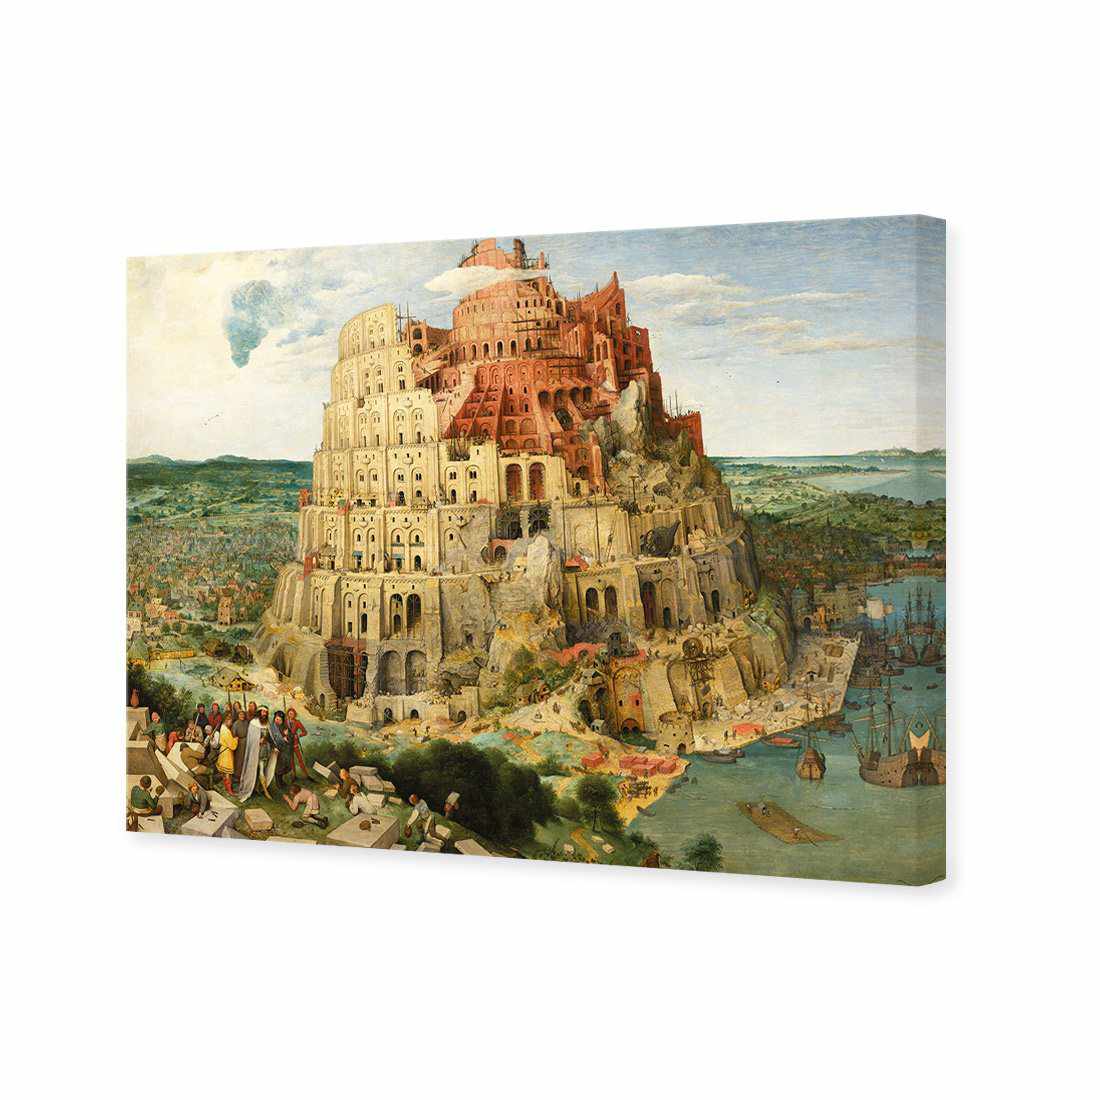 Tower Of Babel - Pieter Bruegel The Elder Canvas Art-Canvas-Wall Art Designs-45x30cm-Canvas - No Frame-Wall Art Designs